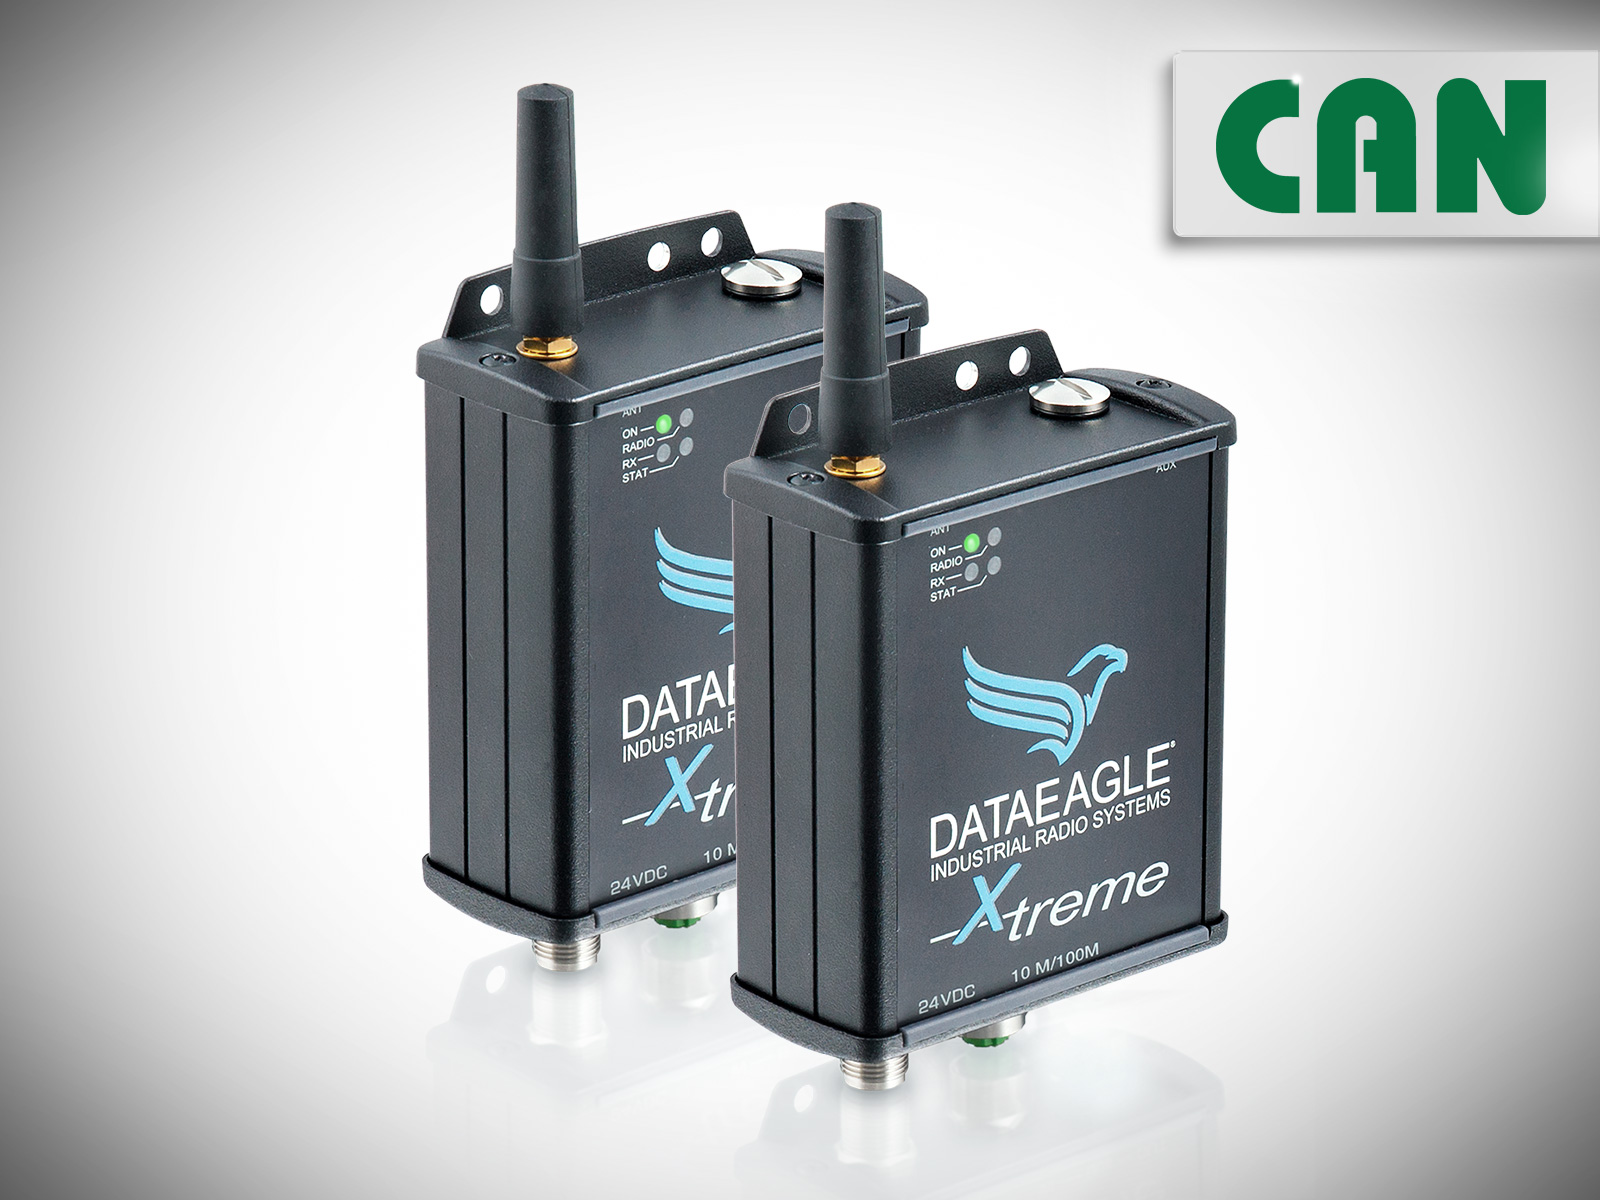 DATAEAGLE 6000 X-treme • Industrial Wireless CAN • Funkmodem für die drahtlose Datenübertragung von CAN